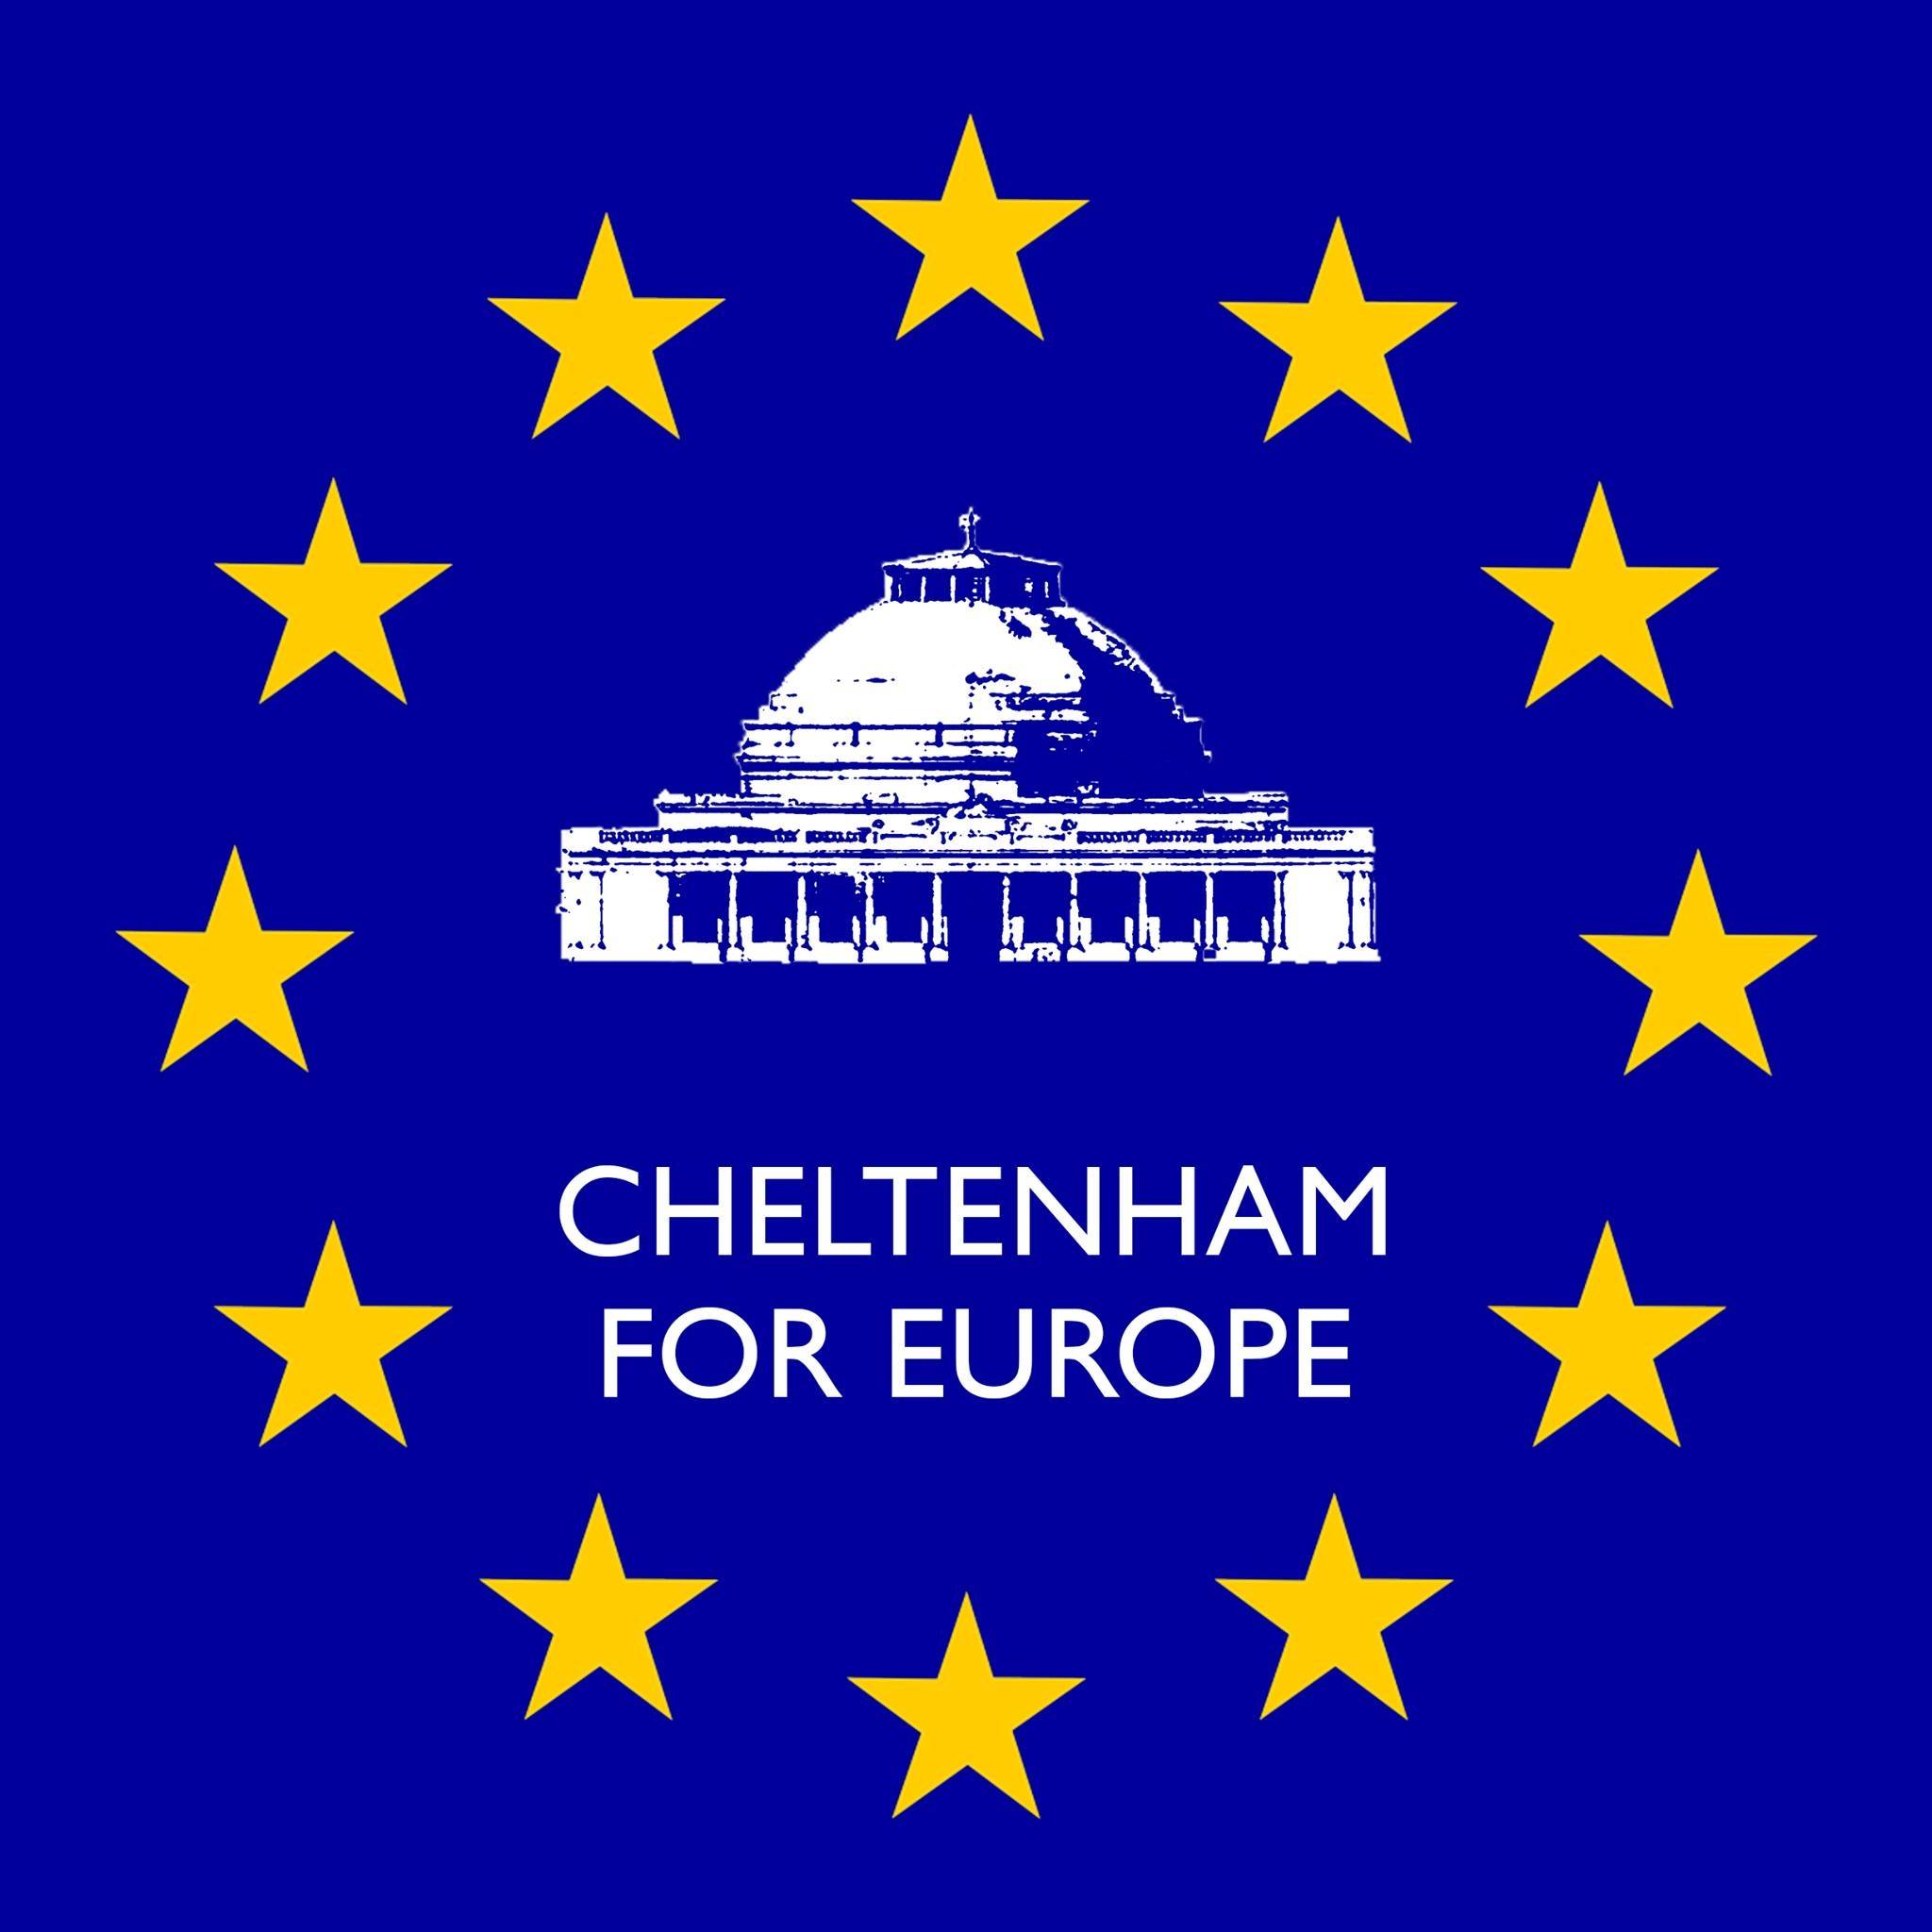 Cheltenham for Europe